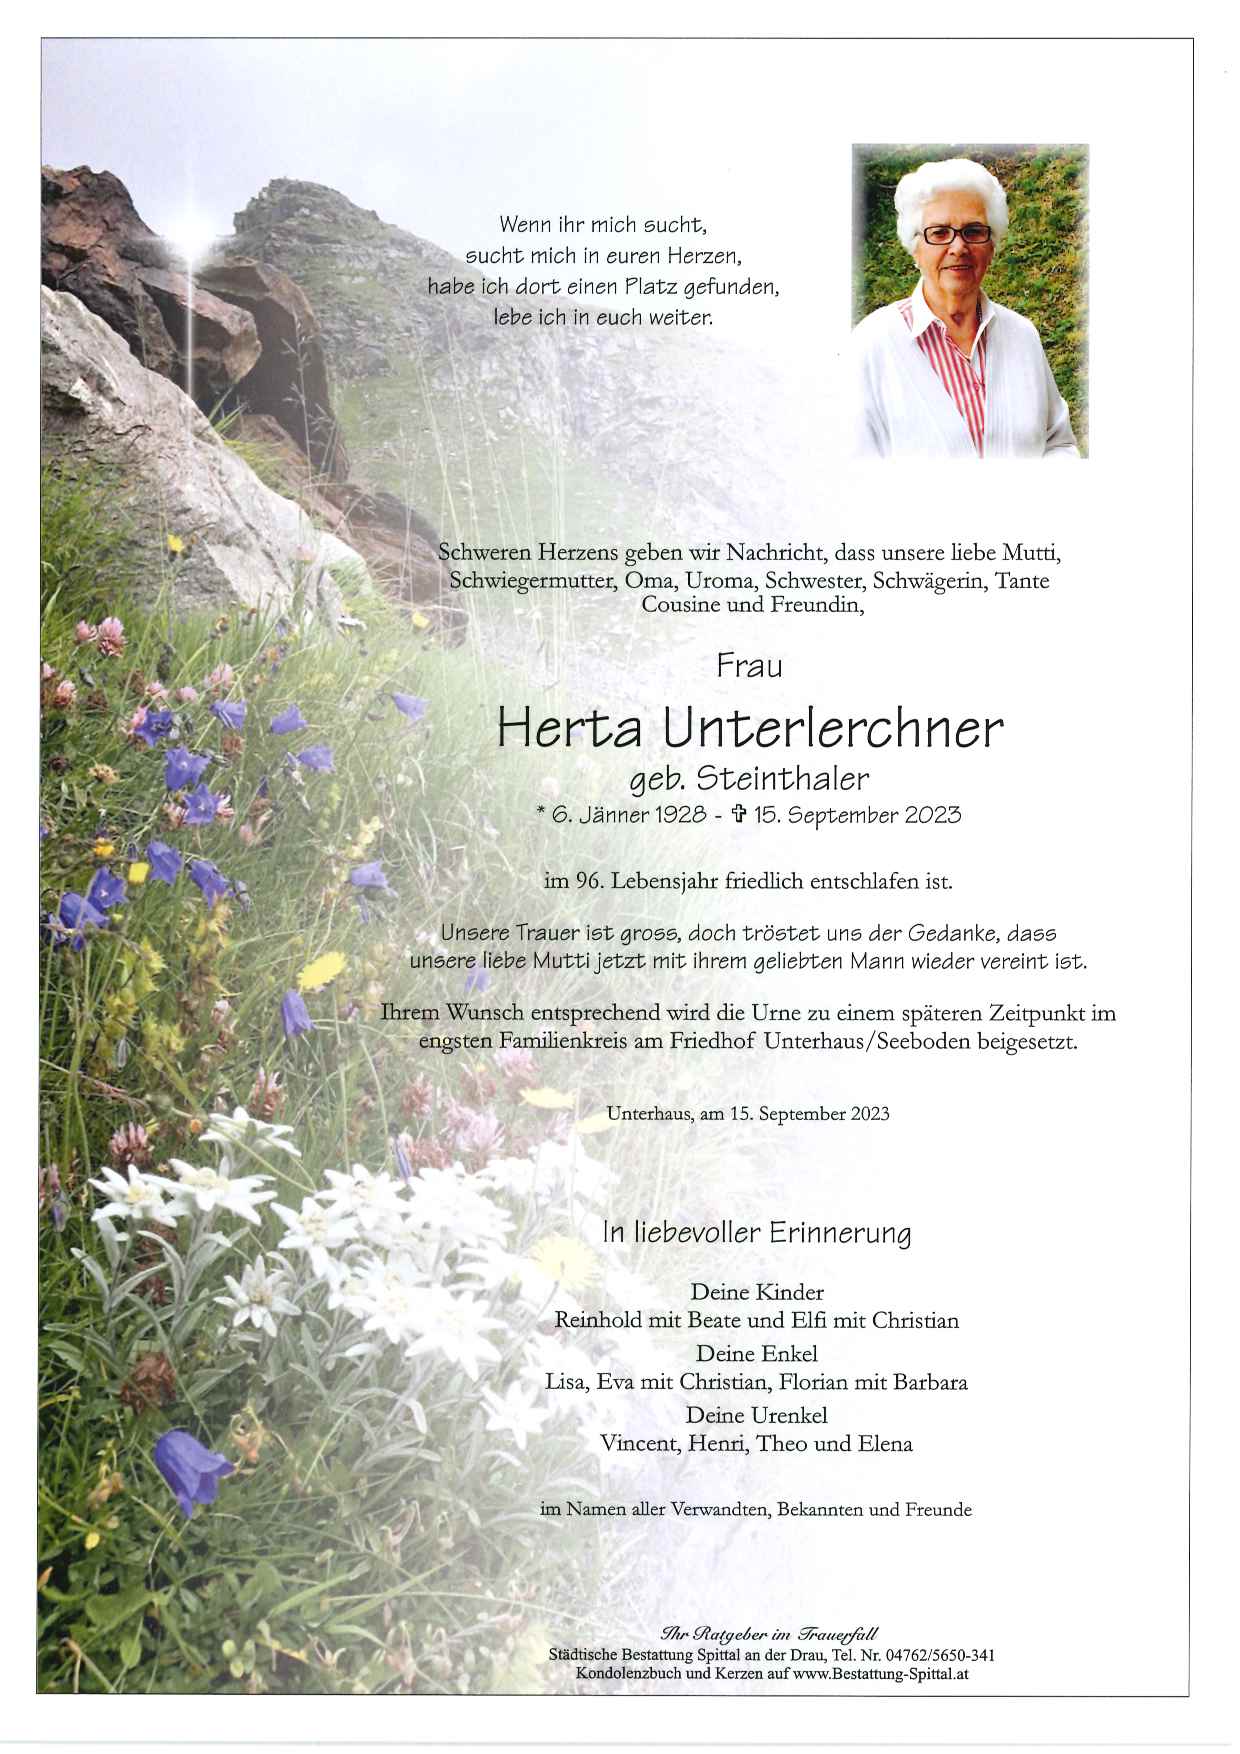 Herta Unterlerchner